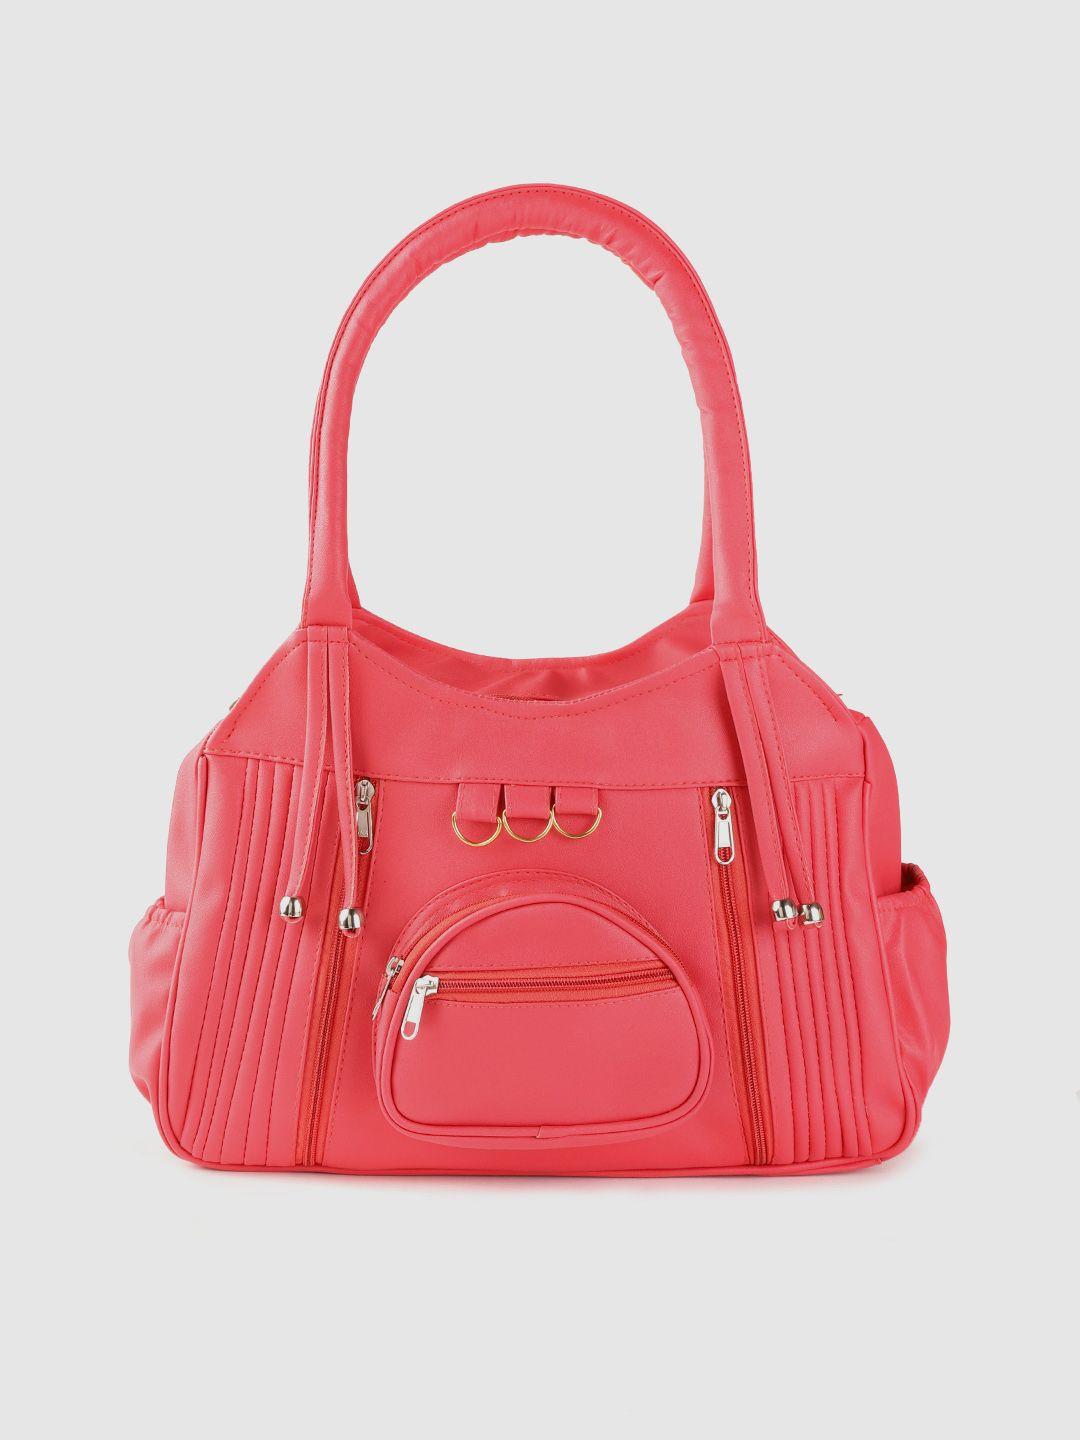 leather retail pink structured shoulder bag